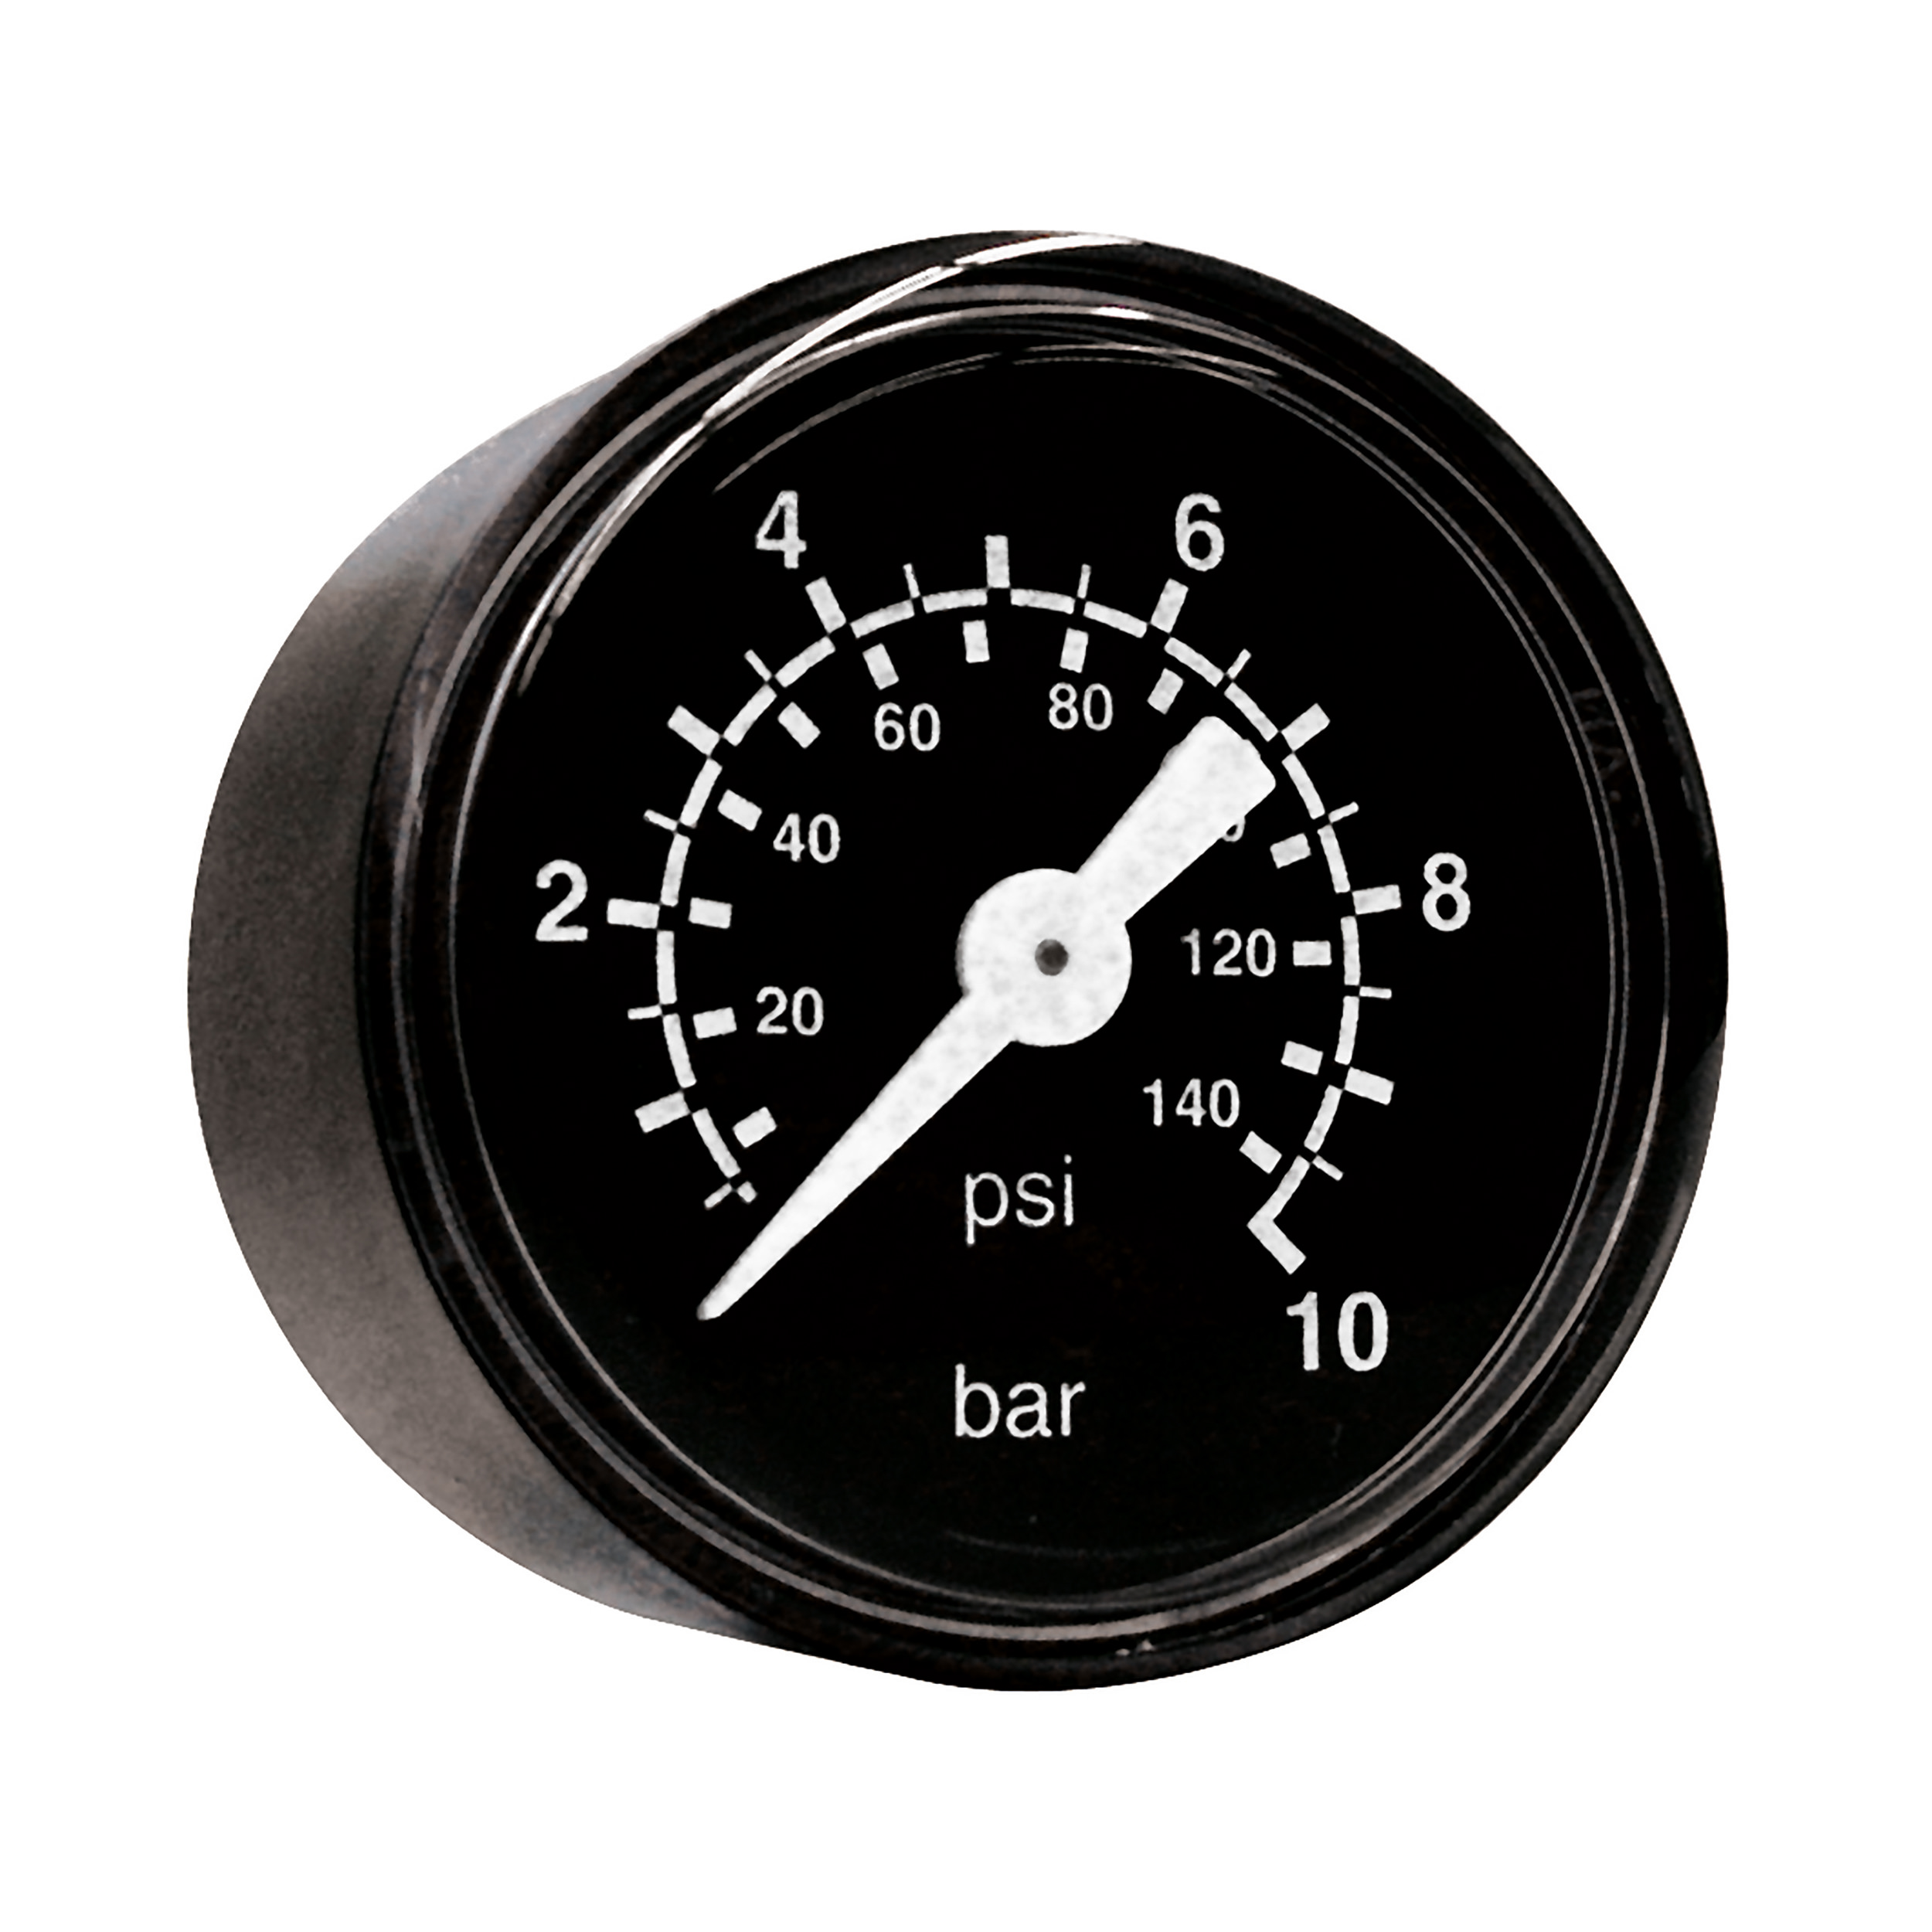 Rohrfeder-Manometer Ø40, Klasse 2,5, Grund/Aufdruck: schwarz/weiß, Anschluss waagrecht: G⅛, Anzeigebereich: 0–10 bar